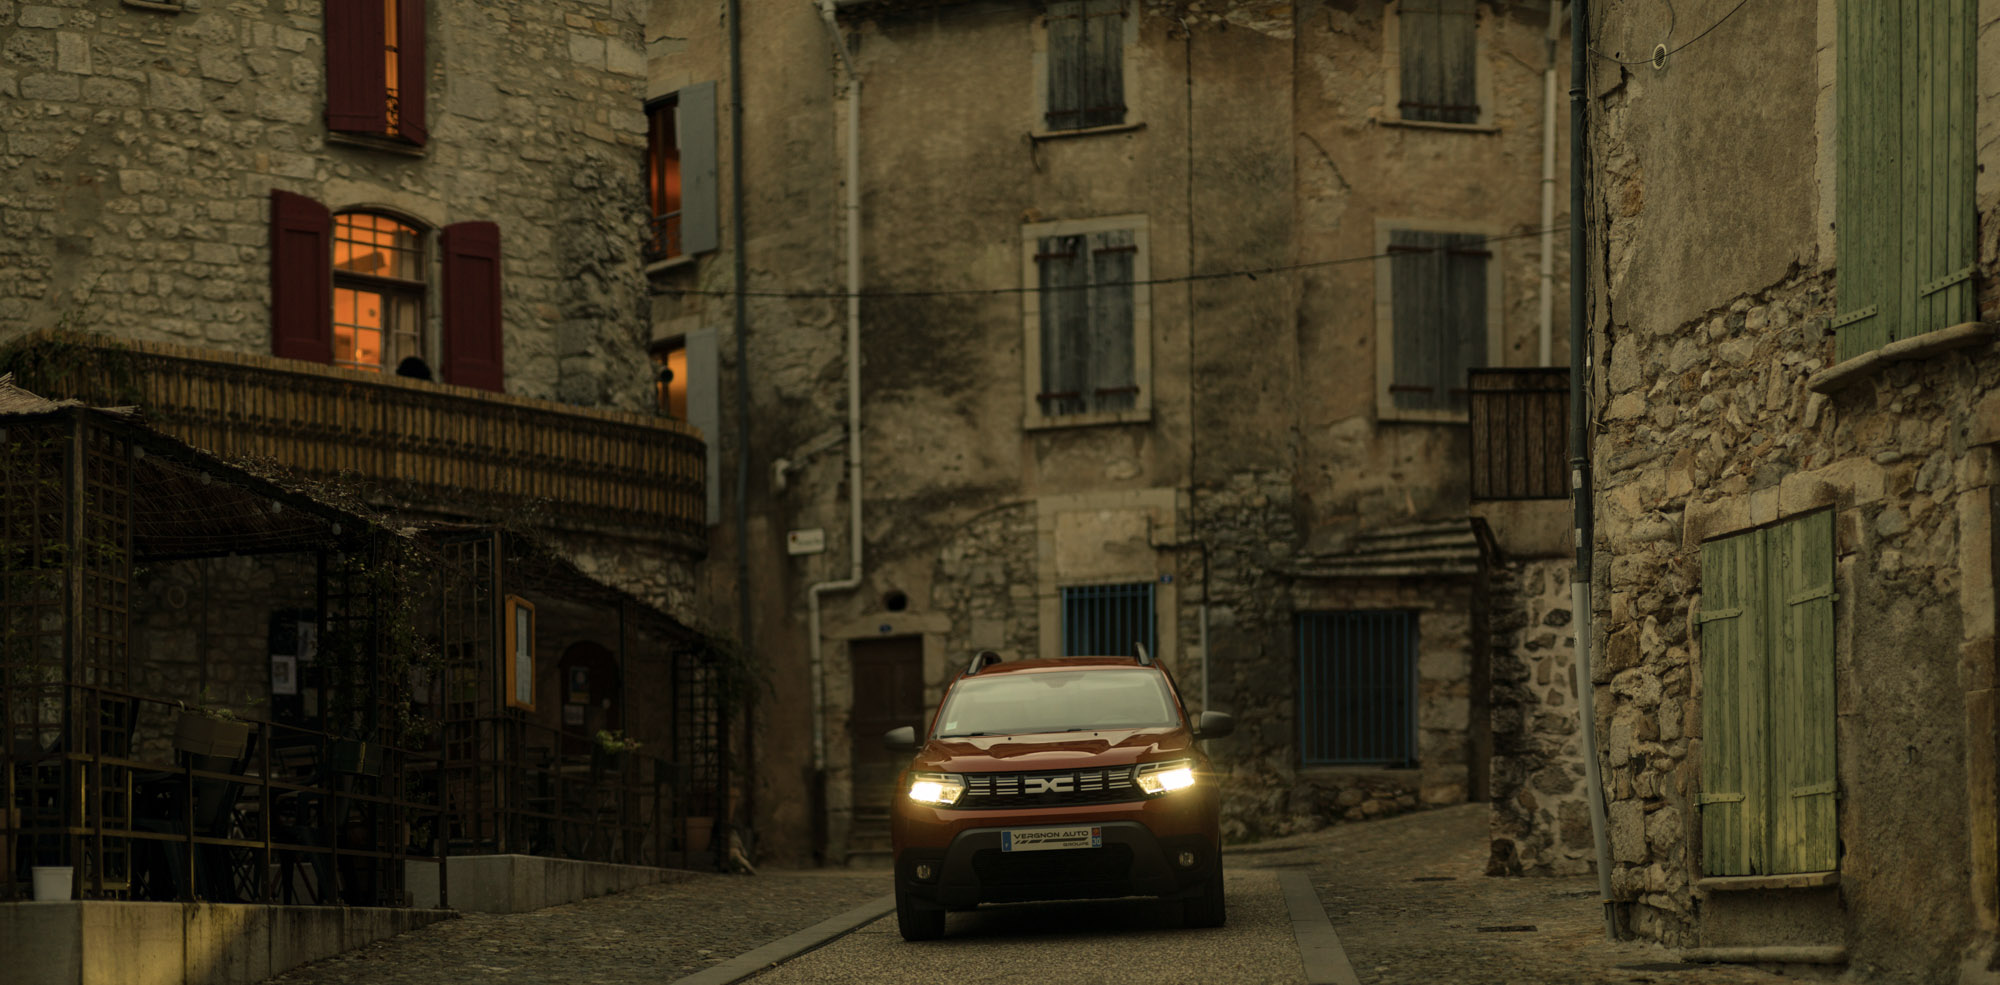 Le nouveau Dacia Duster dans les ruelles du centre historique de Sauve, en Piémont cévenol.